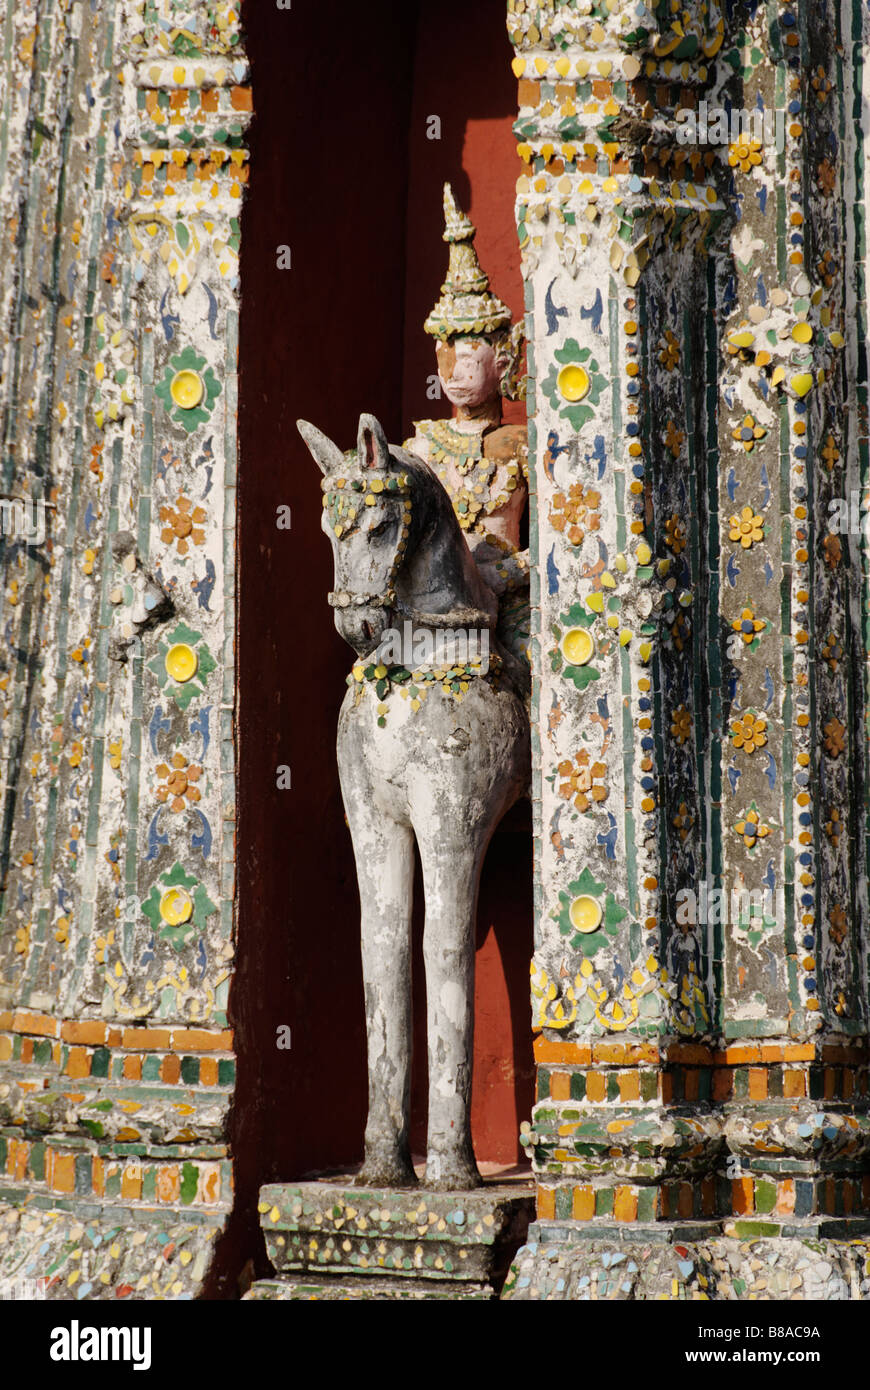 Détail des carreaux de céramique et statue équestre - Wat Arun temple bouddhiste à Bangkok. Thaïlande Banque D'Images